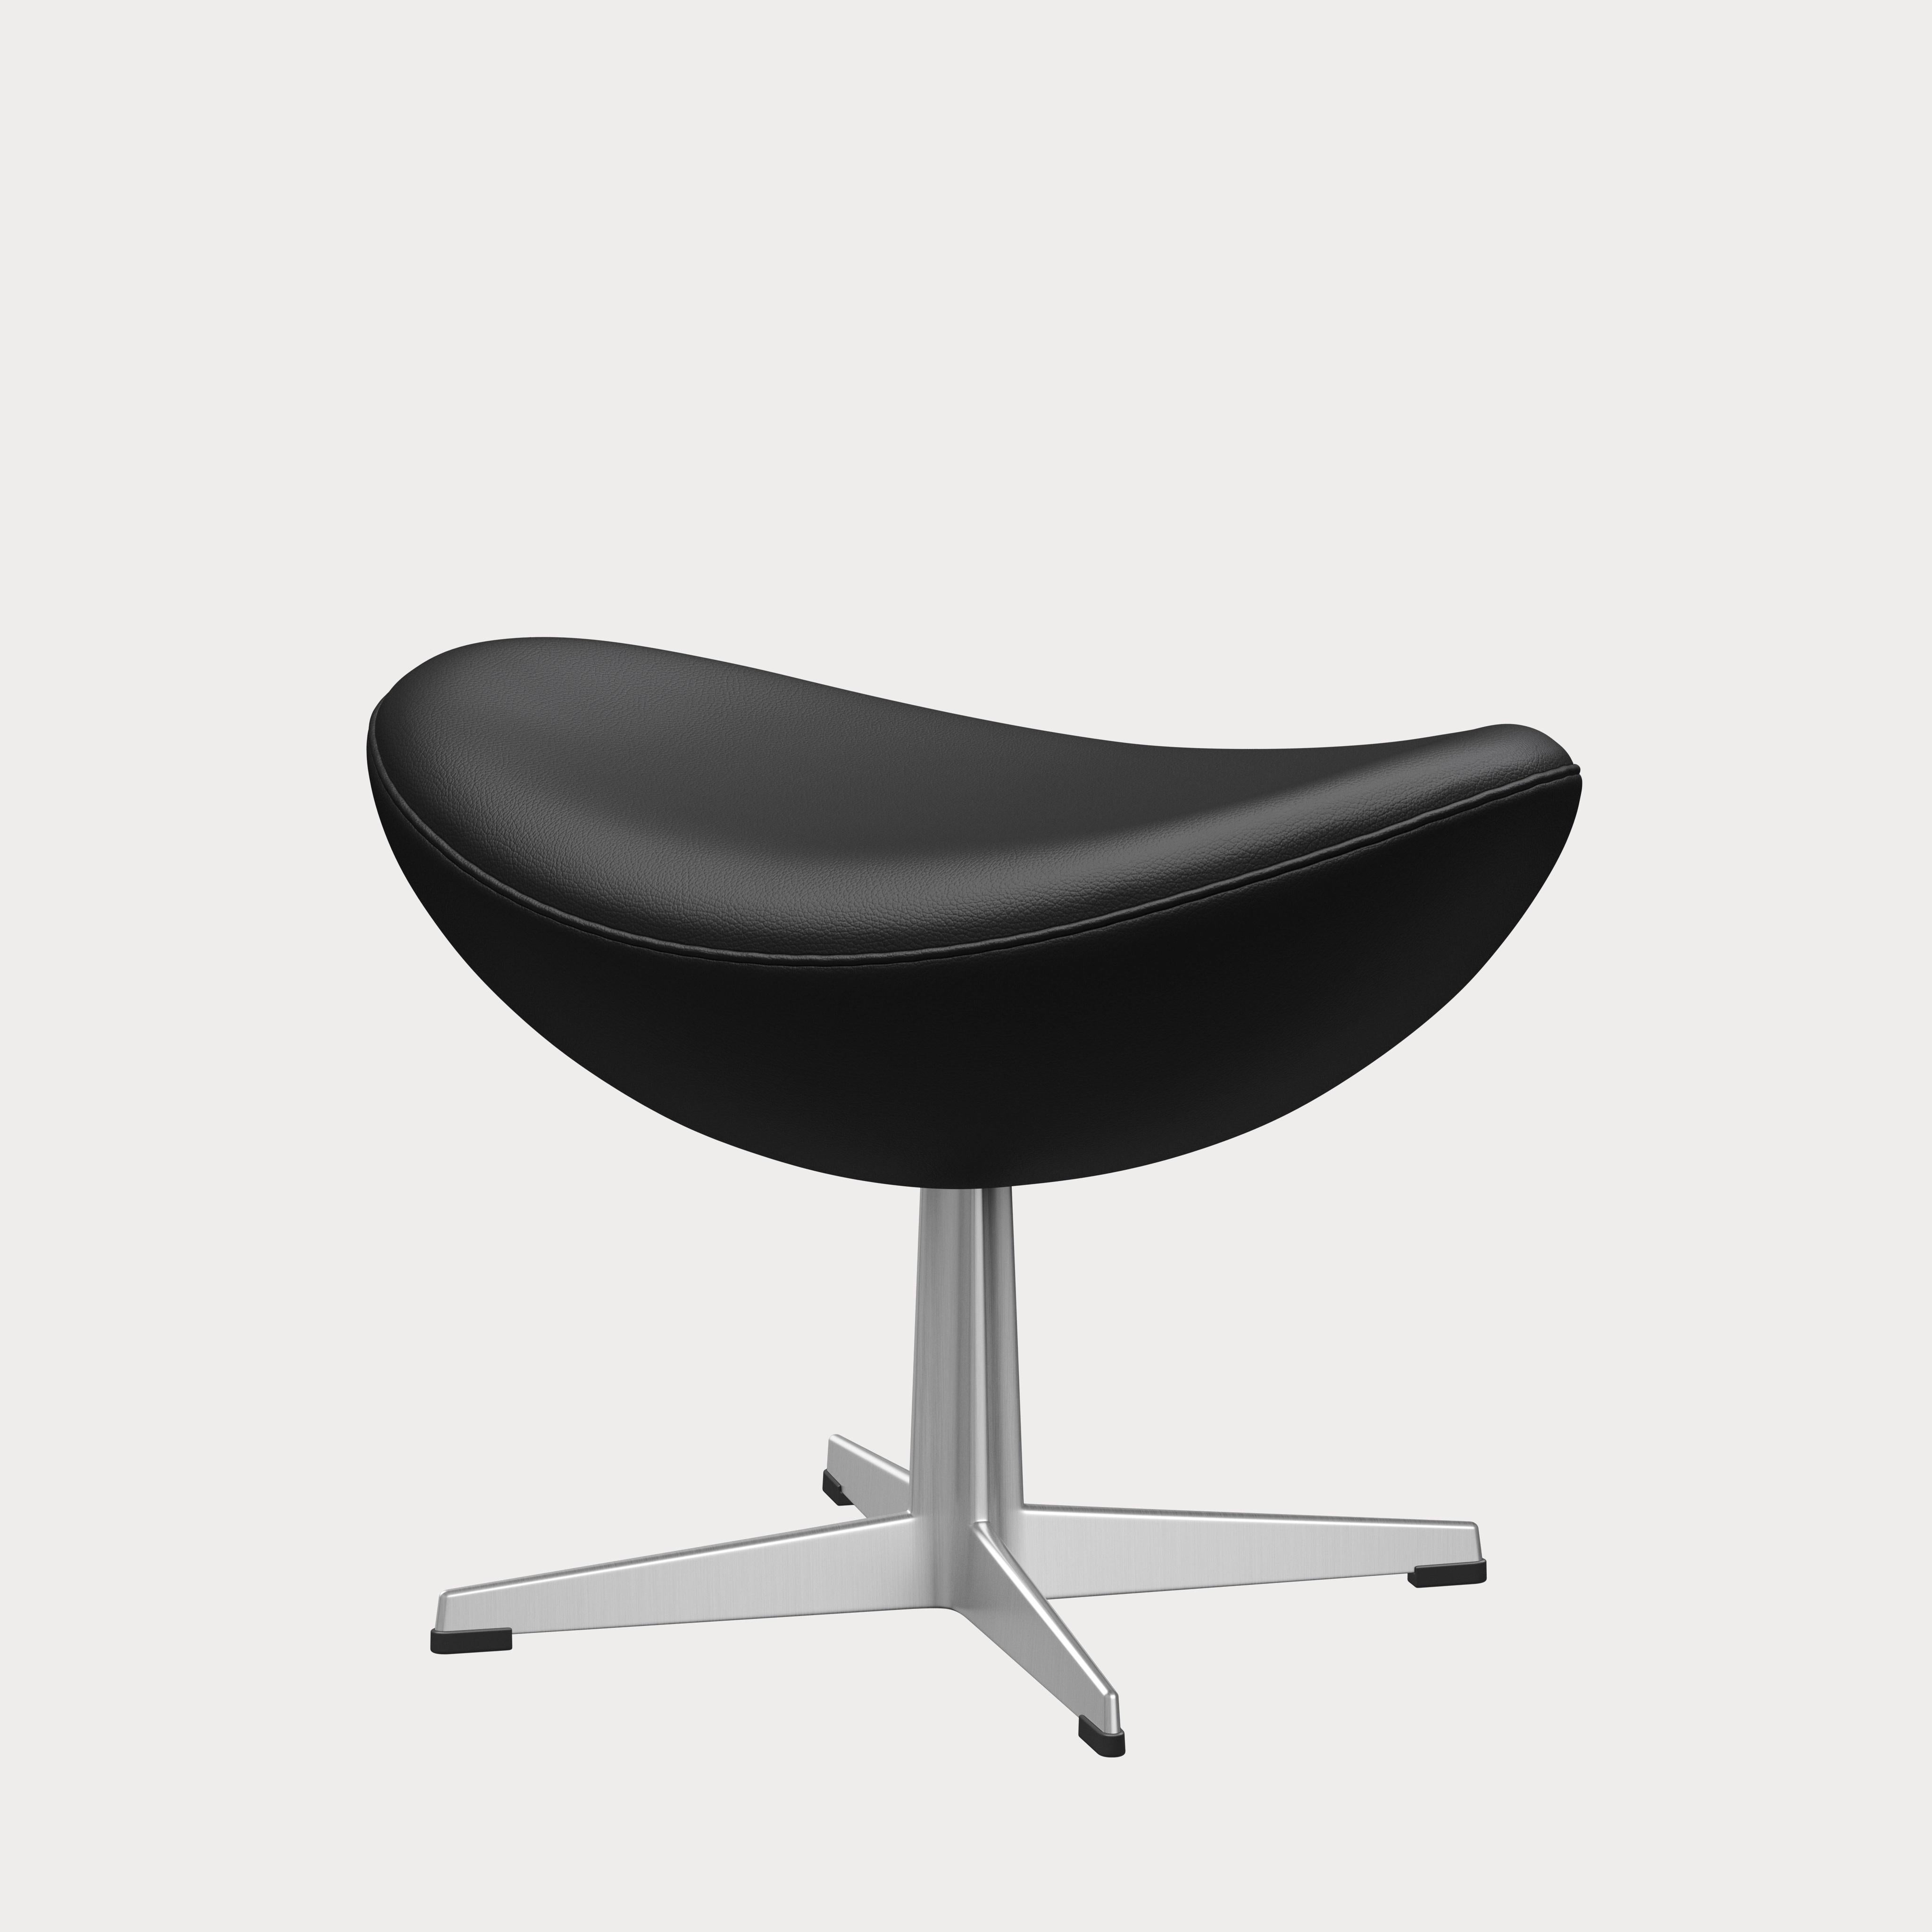 Arne Jacobsen 'Egg' Footstool for Fritz Hansen in Leather Upholstery (Cat. 4) For Sale 2